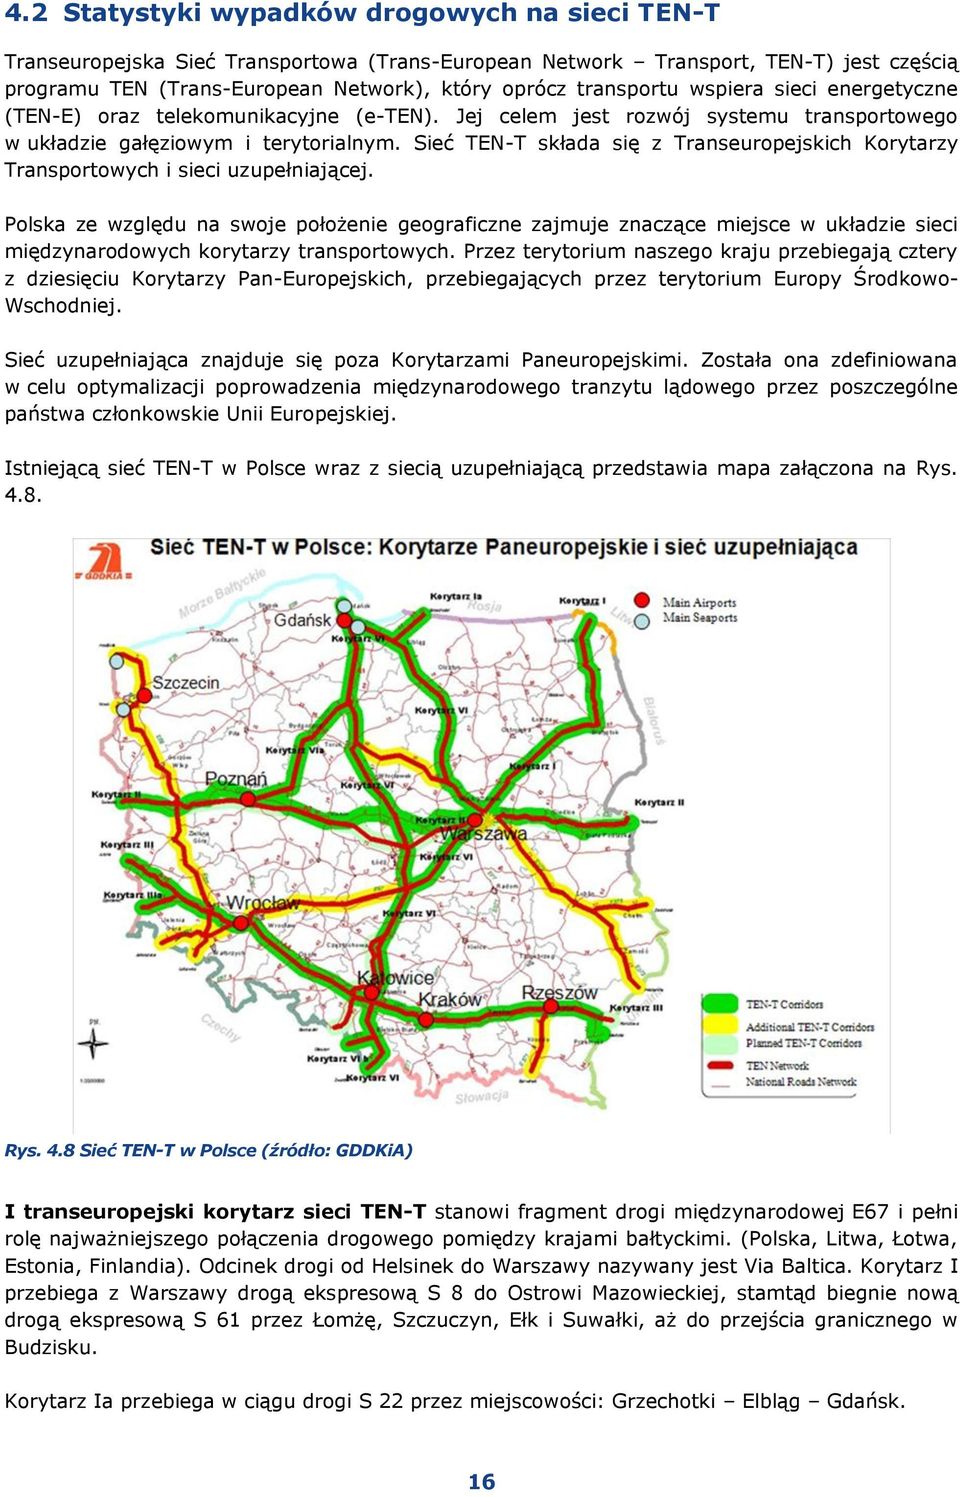 Sieć TEN-T składa się z Transeuropejskich Korytarzy Transportowych i sieci uzupełniającej.